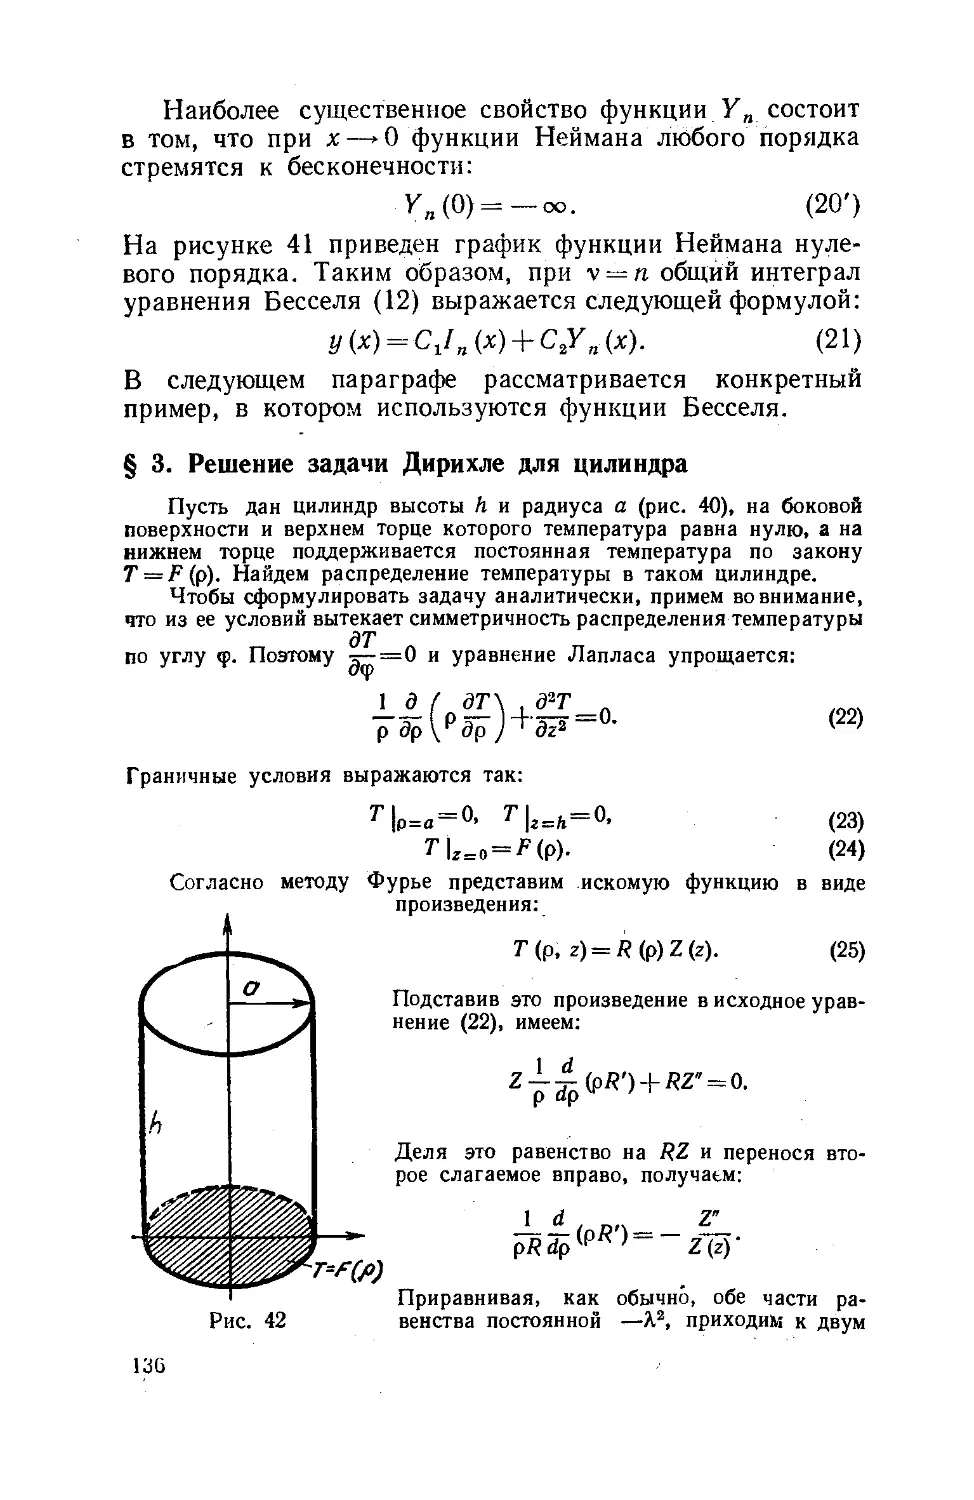 § 3. Решение задачи Дирихле для цилиндра